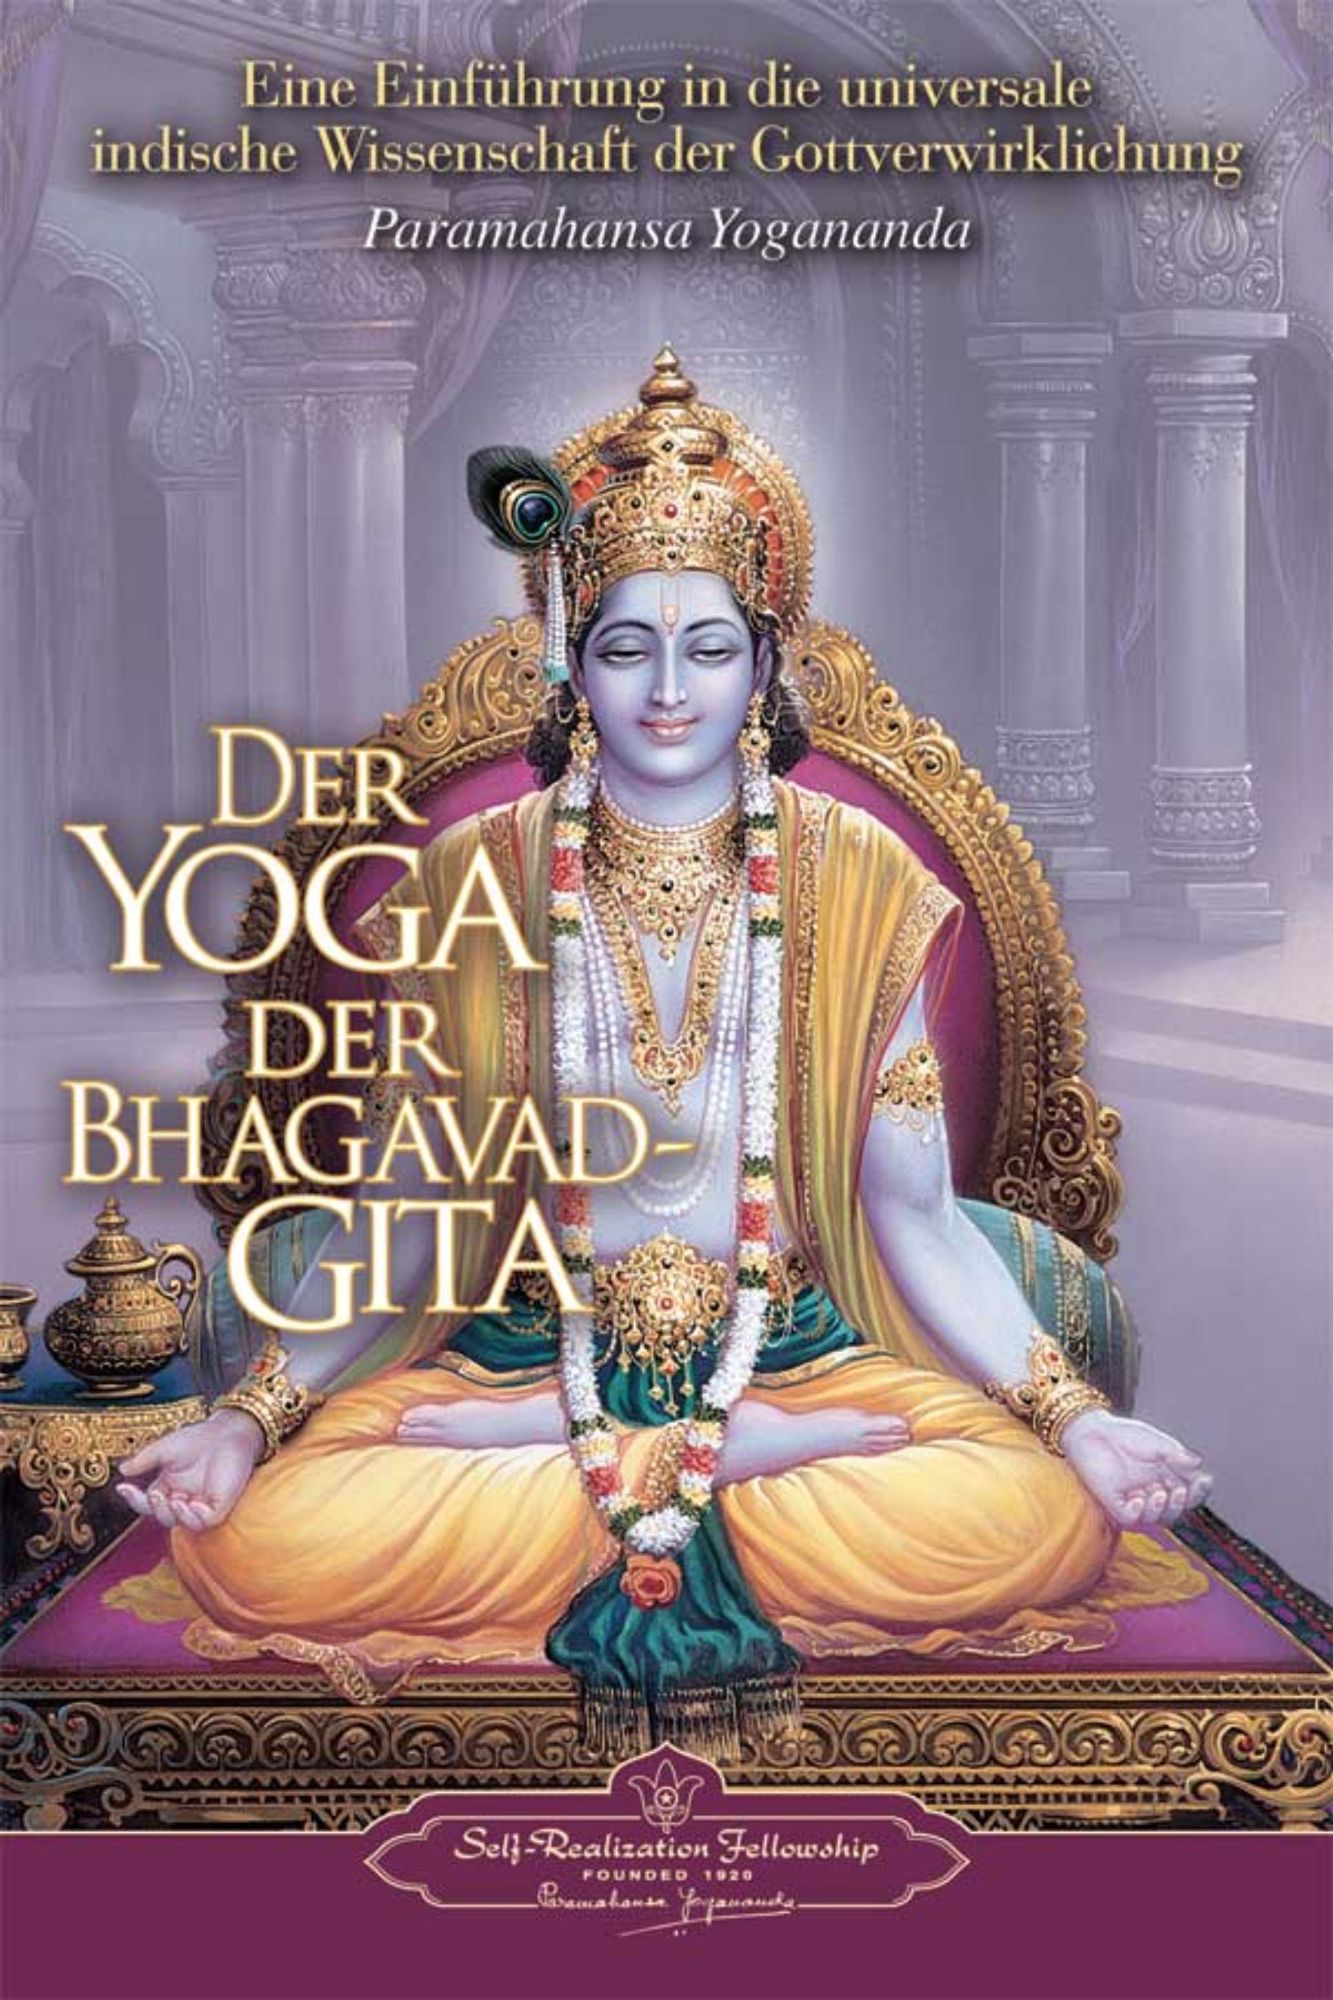 Der Yoga der Bhagavad-Gita, Paramahansa Yogananda